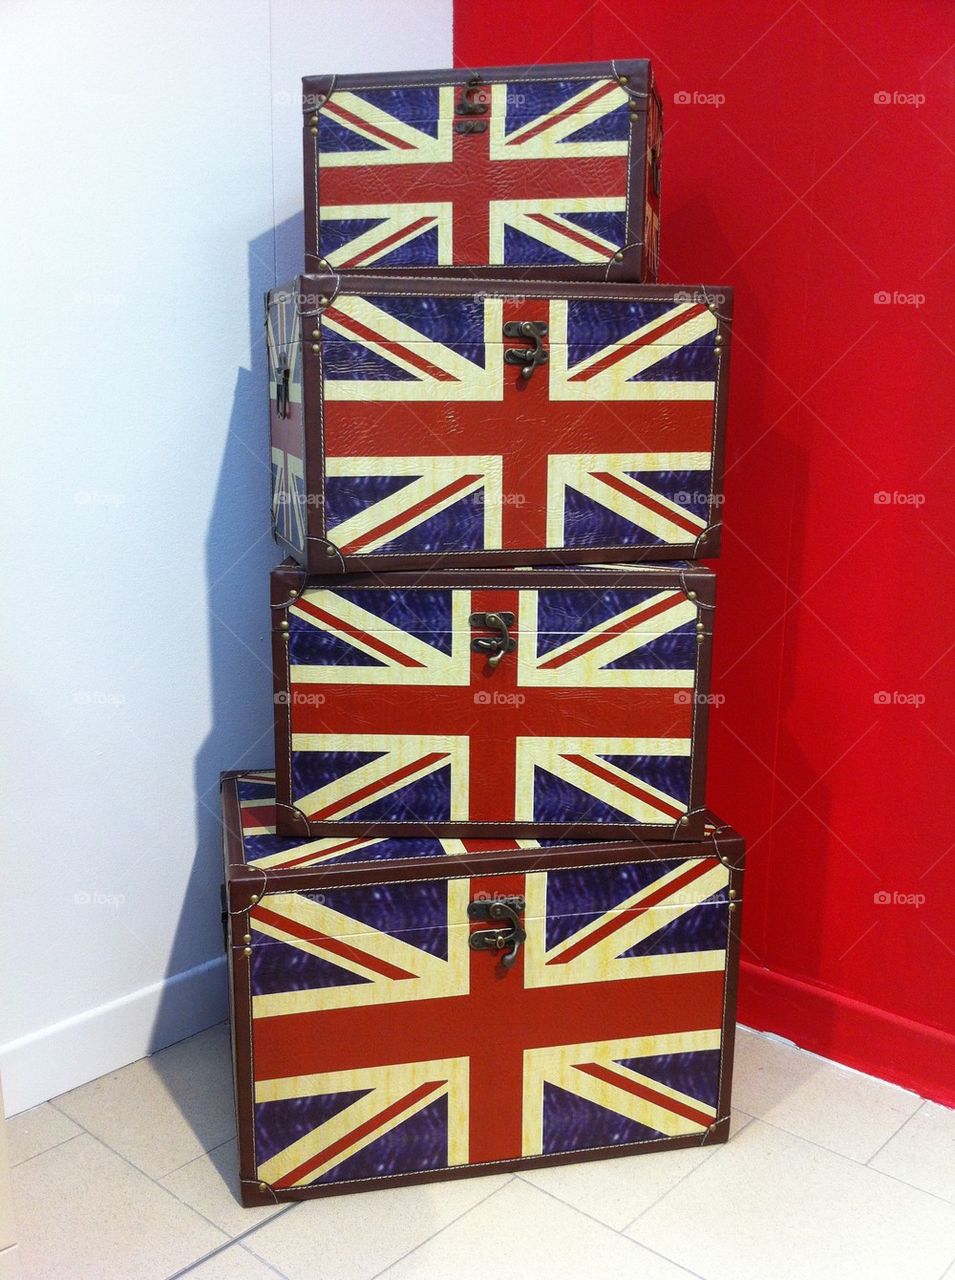 Union Jack boxes